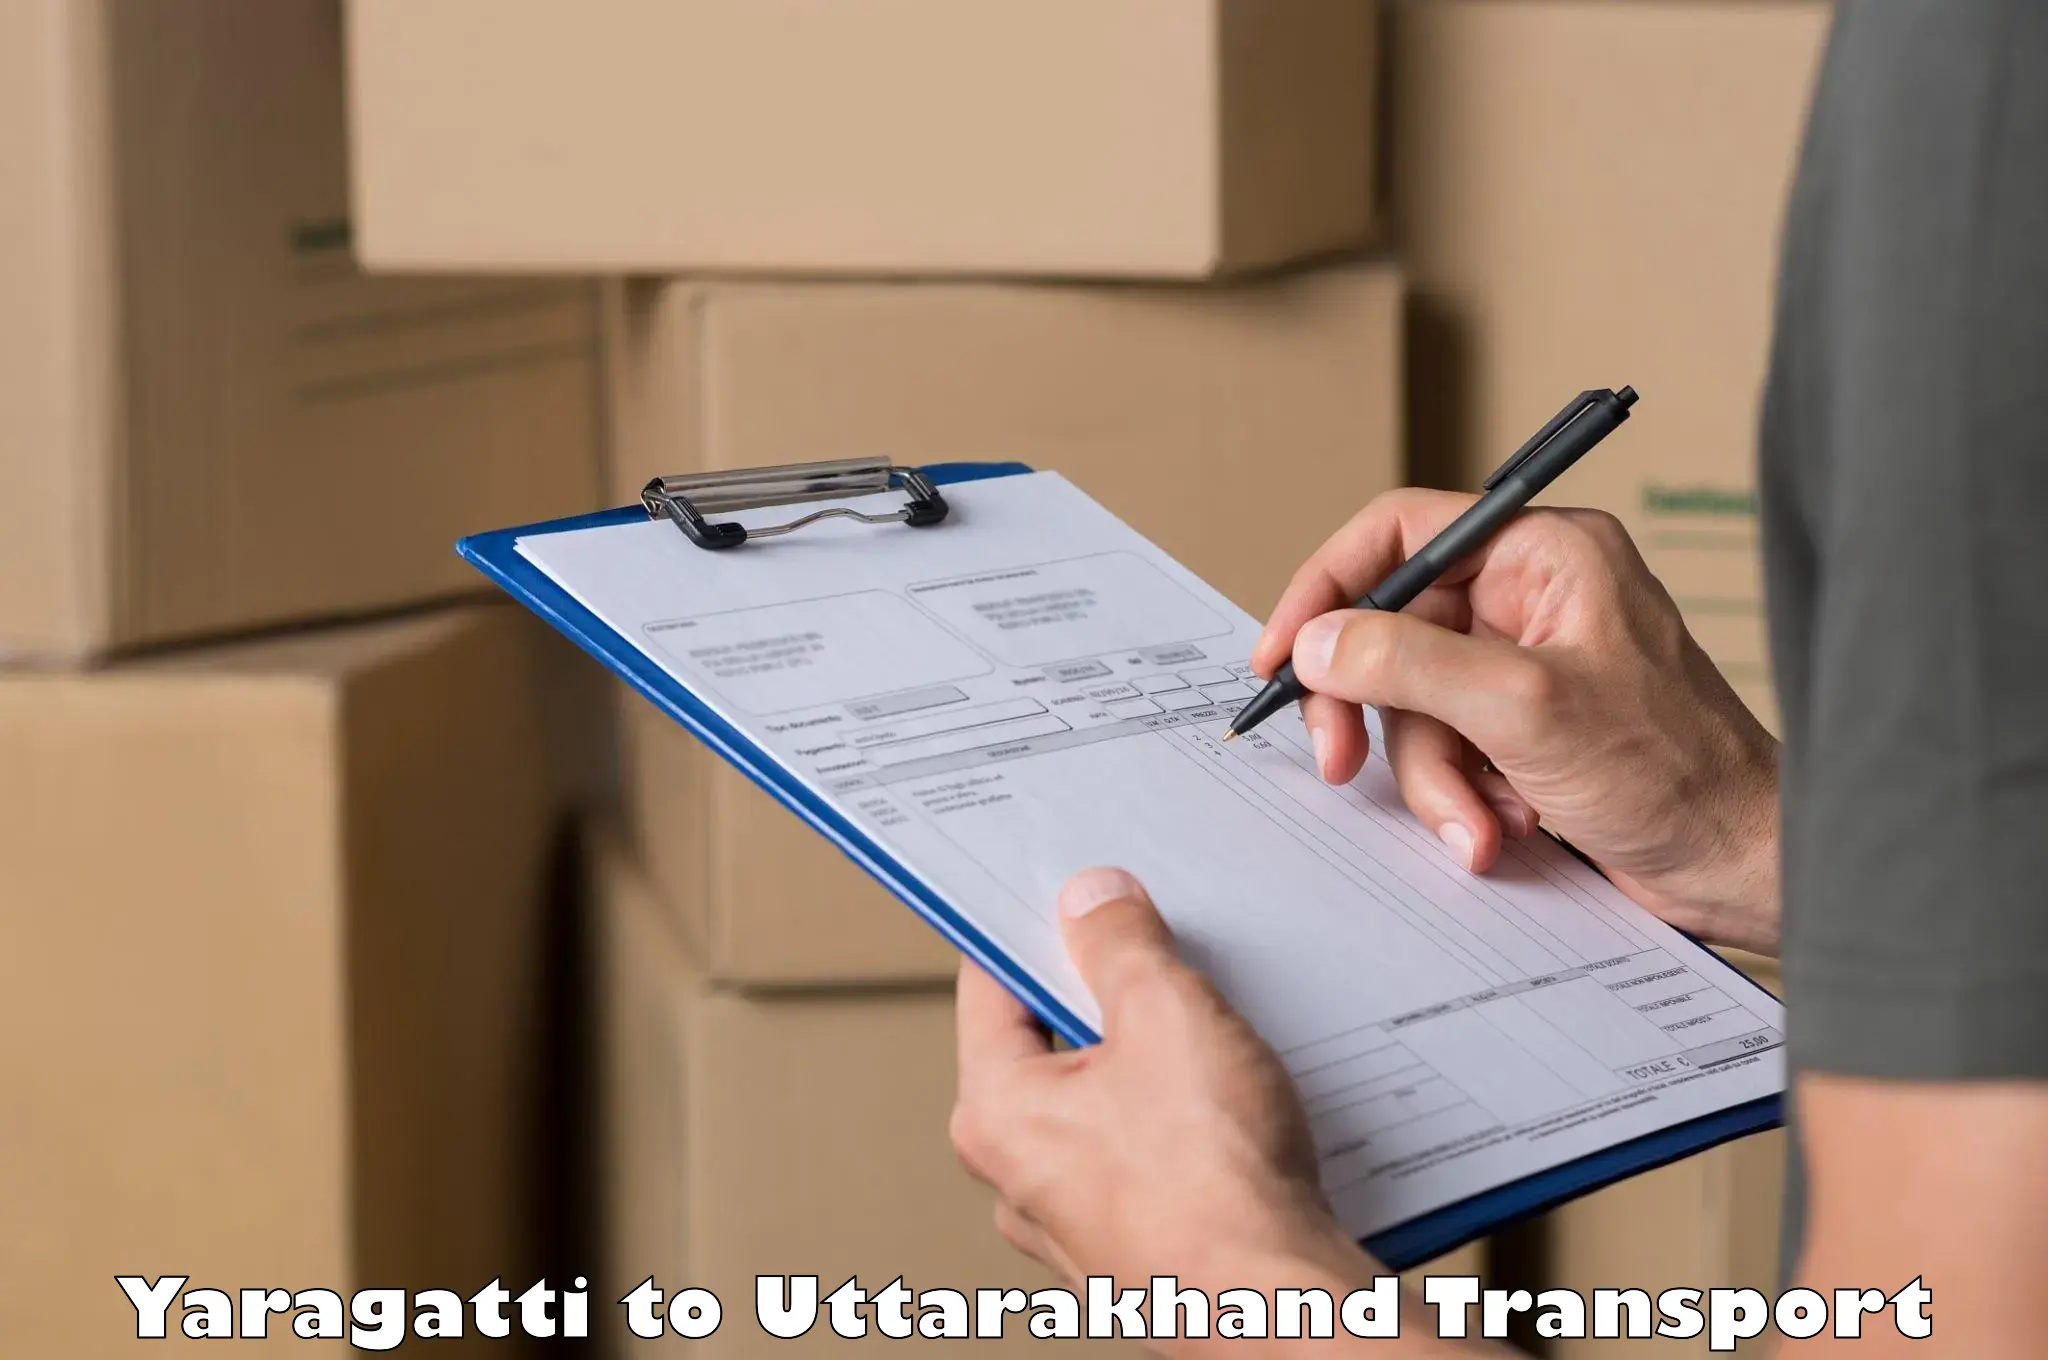 Shipping partner Yaragatti to Uttarakhand